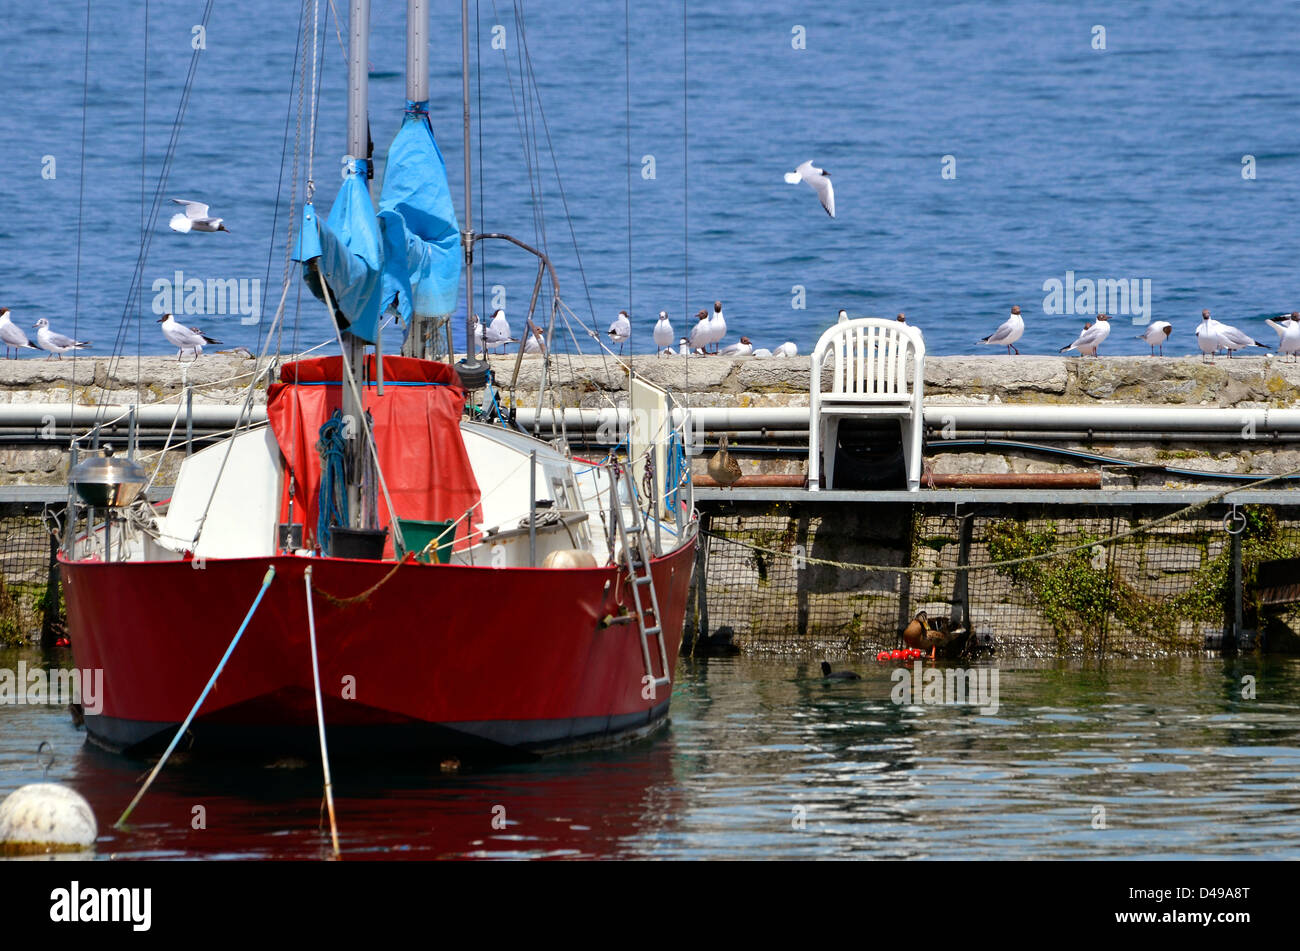 Rosso barca nel porto di Evian con molti gabbiani sulla diga. Evian-les-Bains si trova sulle rive del lago Lemano a est della Francia Foto Stock